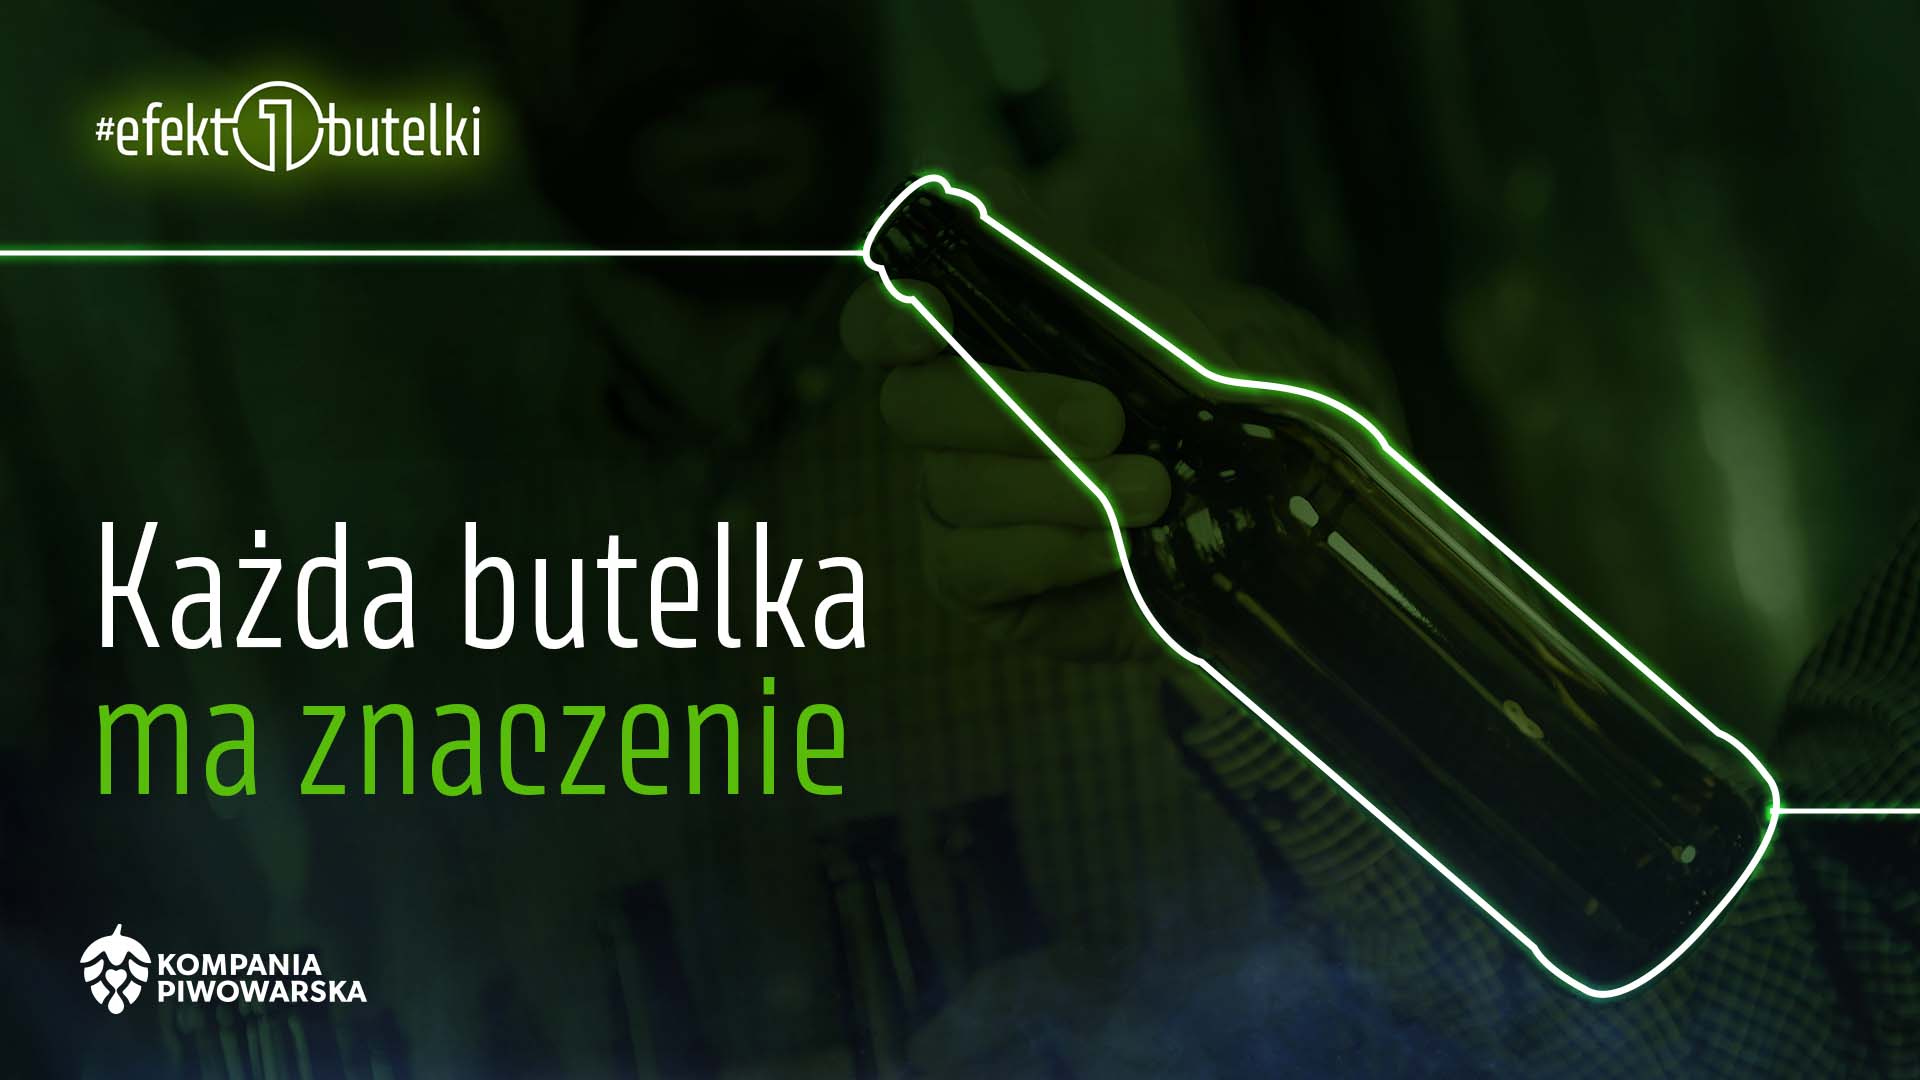 Kompania Piwowarska w nowej kampanii Efekt1butelki zachęca do oddawania butelek zwrotnych